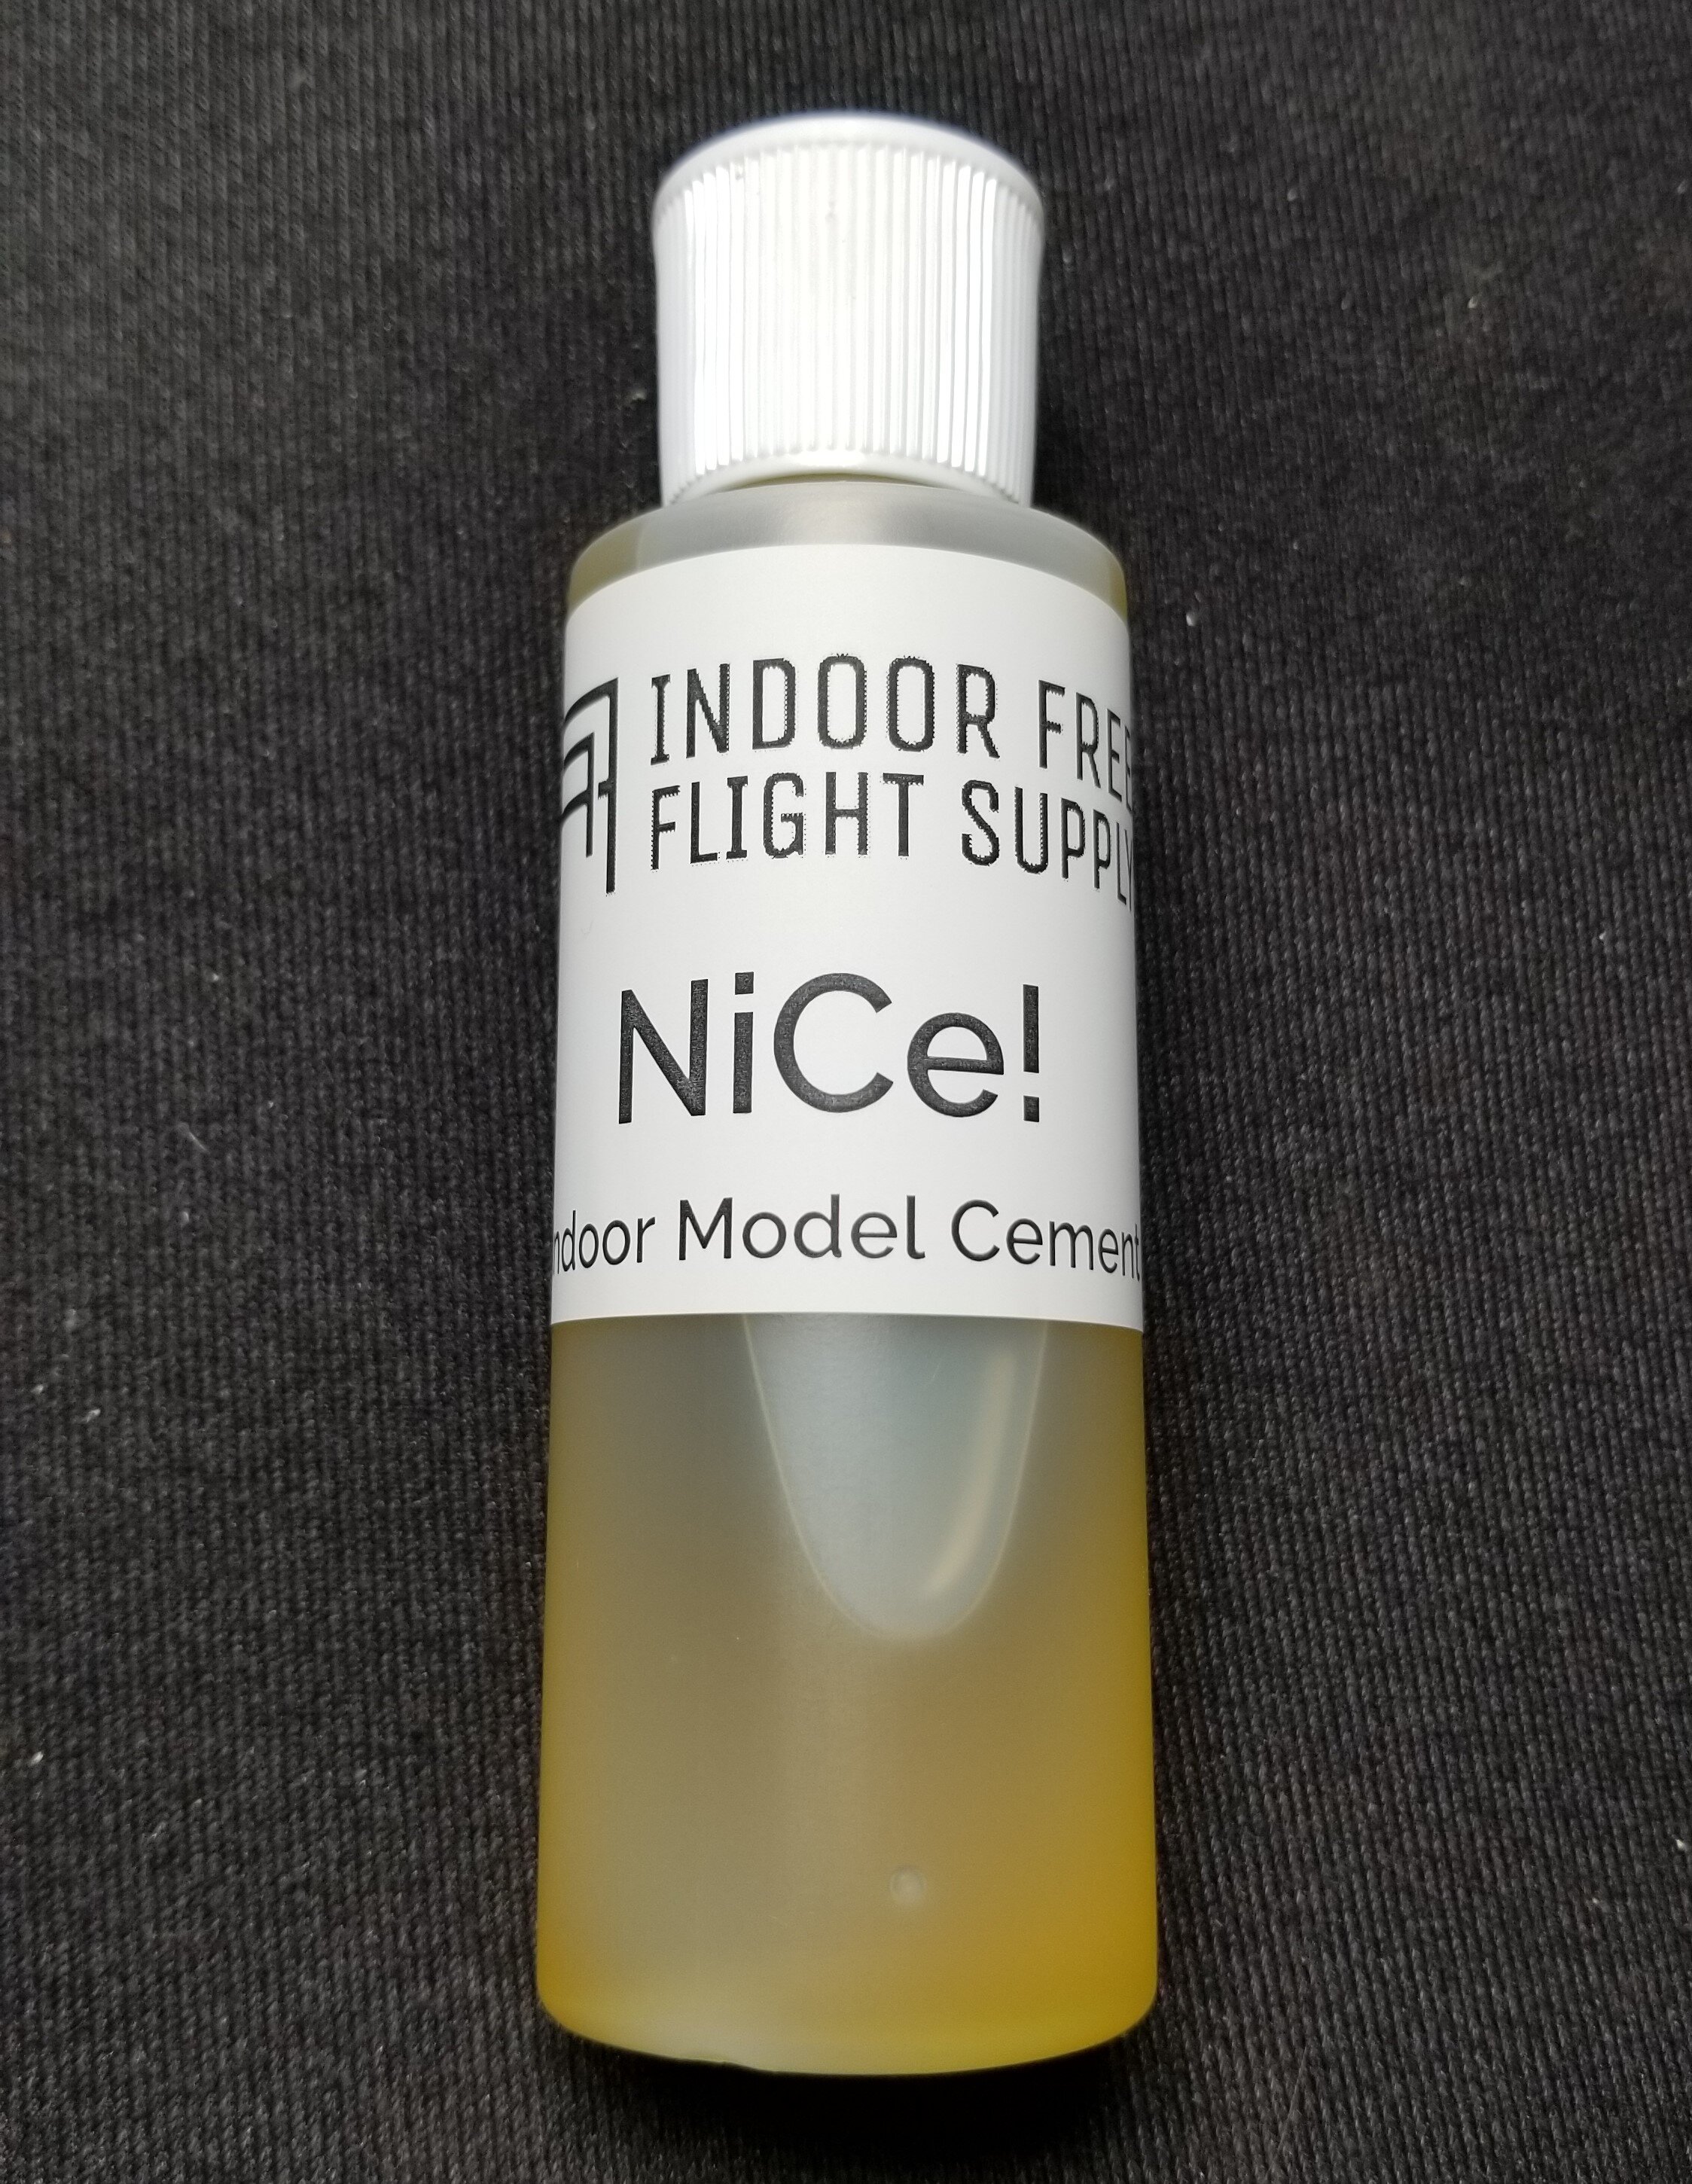 NiCe! Indoor Model Cement (4oz) — Indoor Free Flight Supply